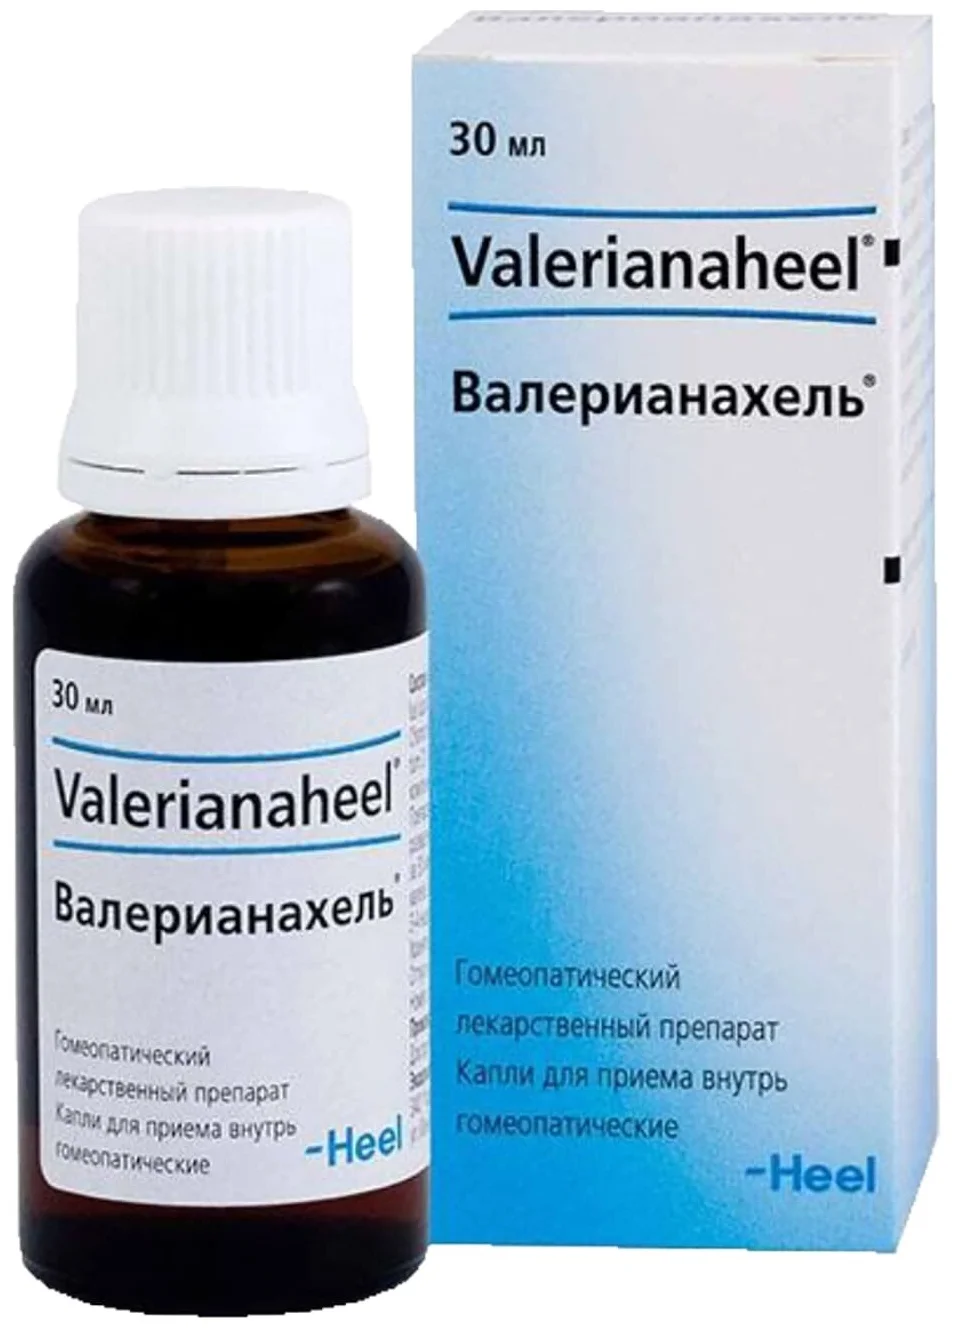 Валерианахель - лекарственный препарат